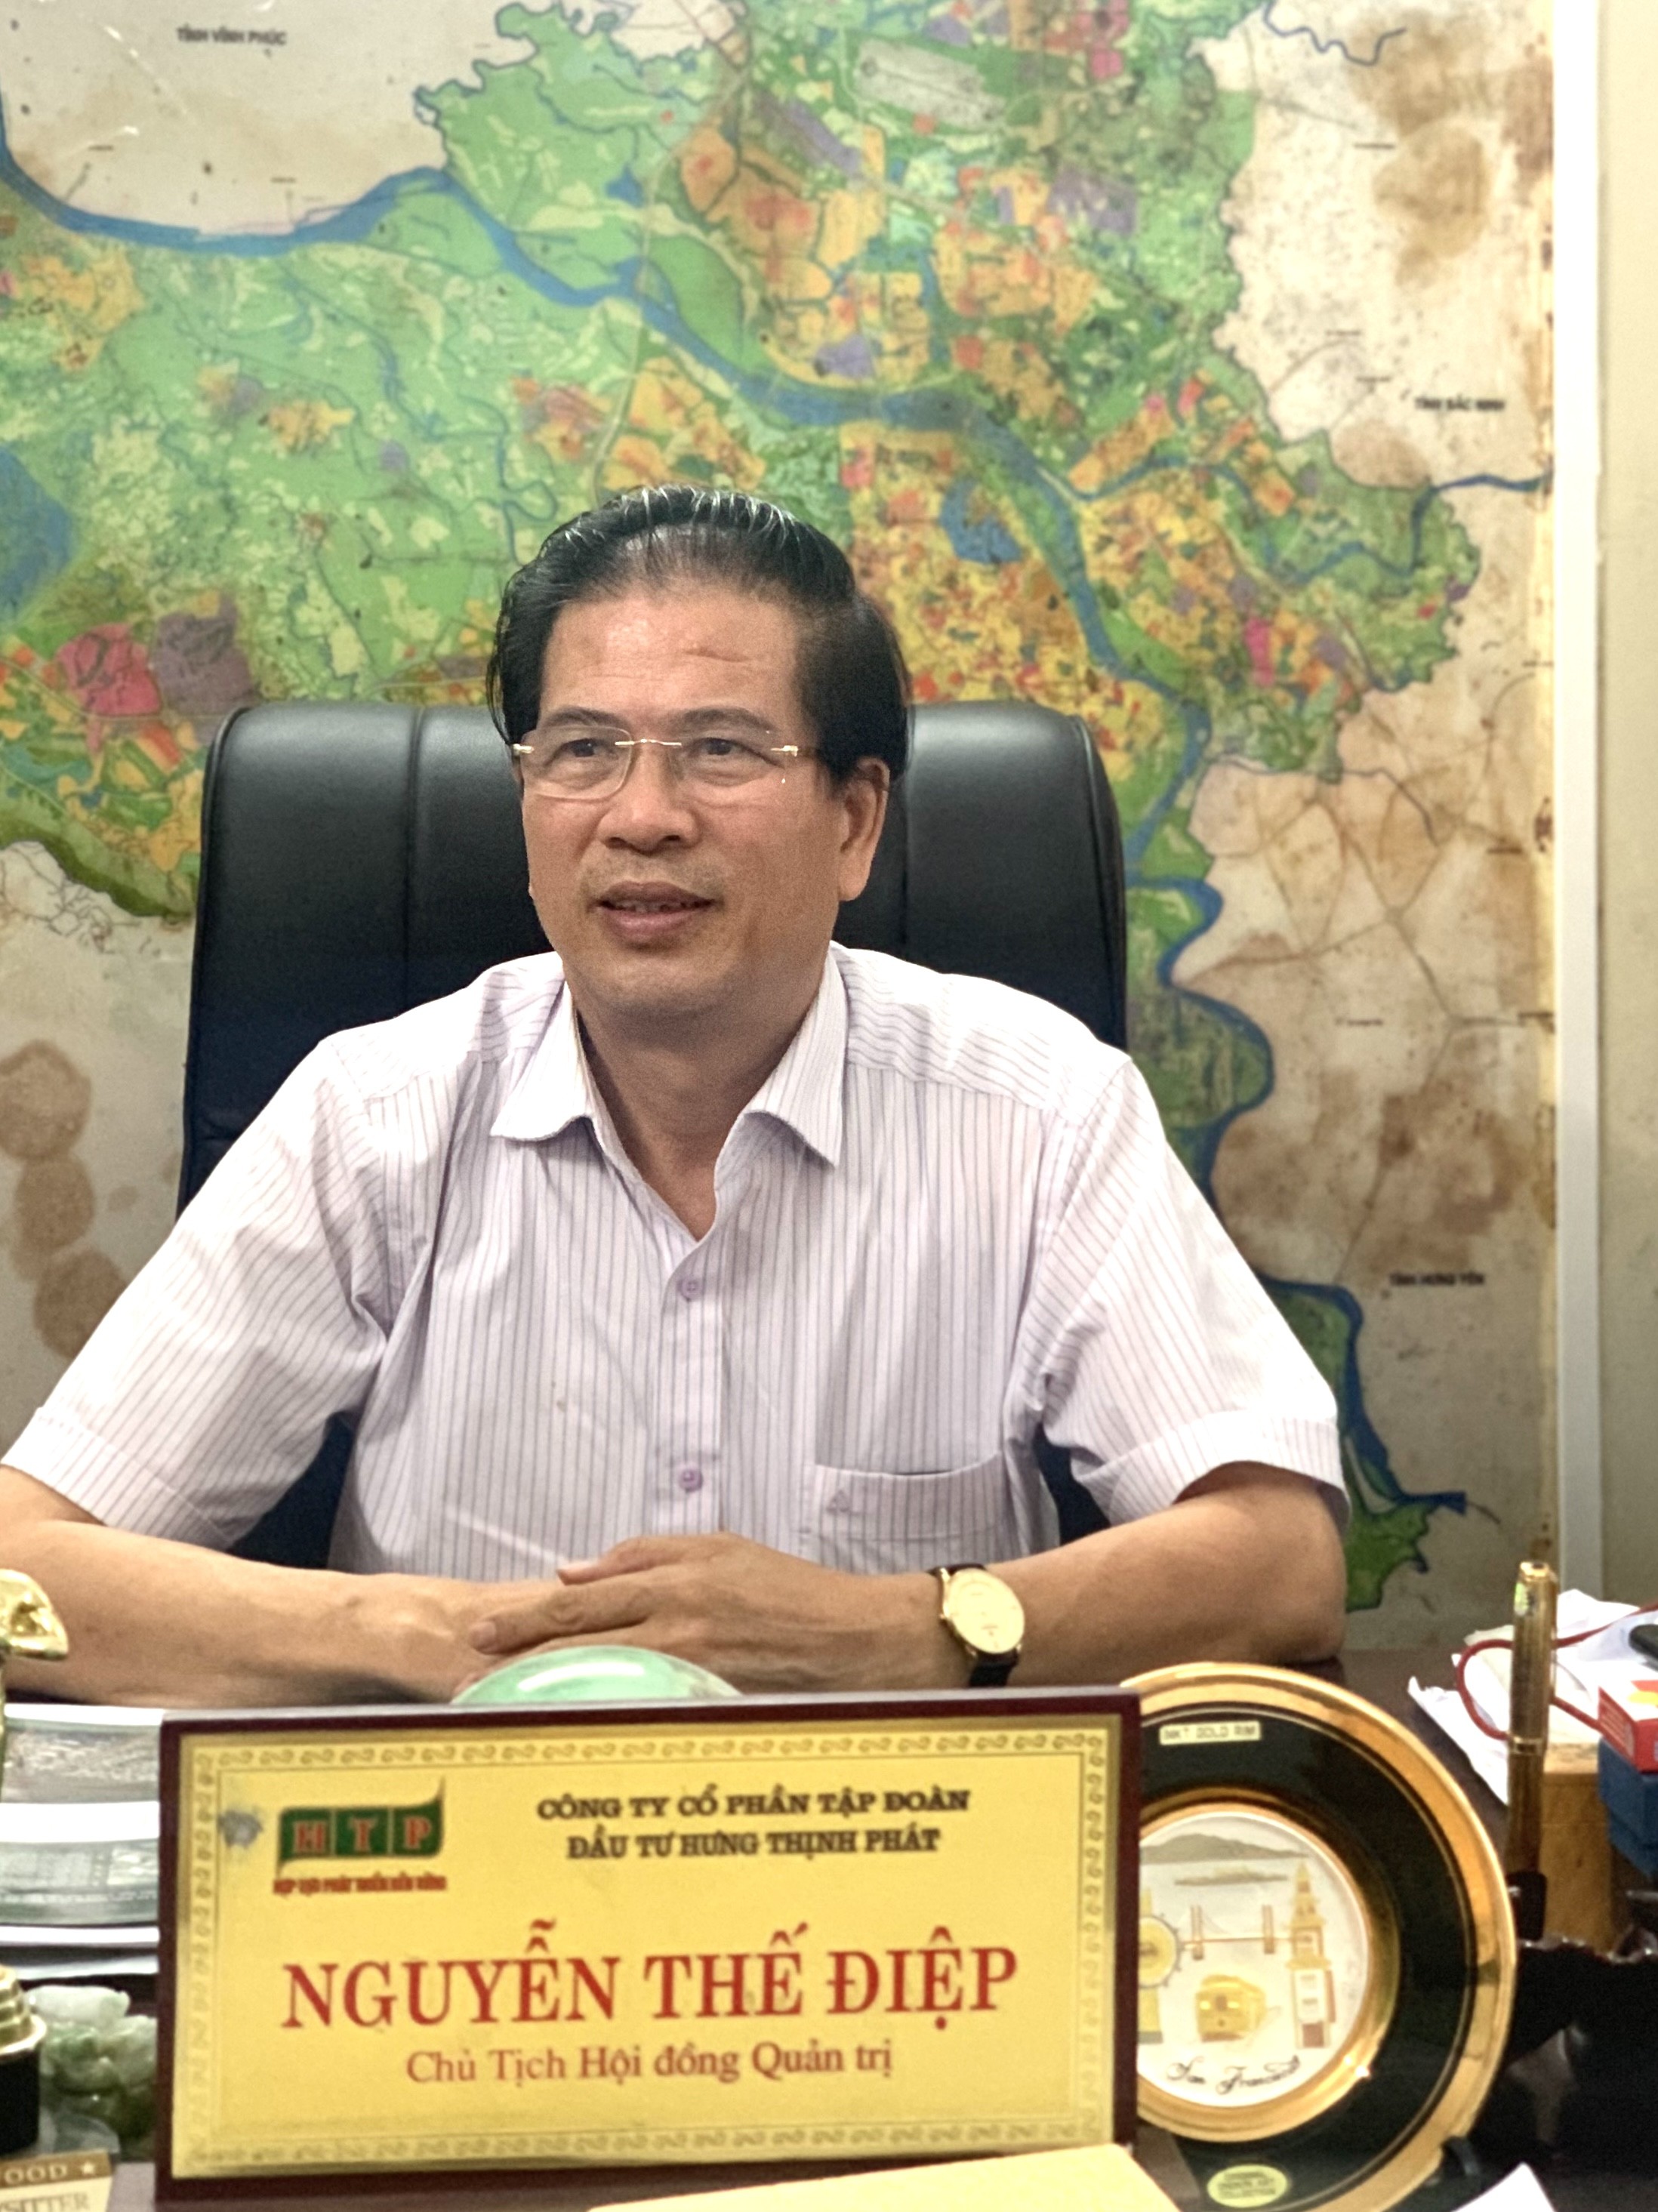 
Ông Nguyễn Thế Điệp, Phó Chủ tịch Câu lạc bộ Bất động sản Hà Nội
